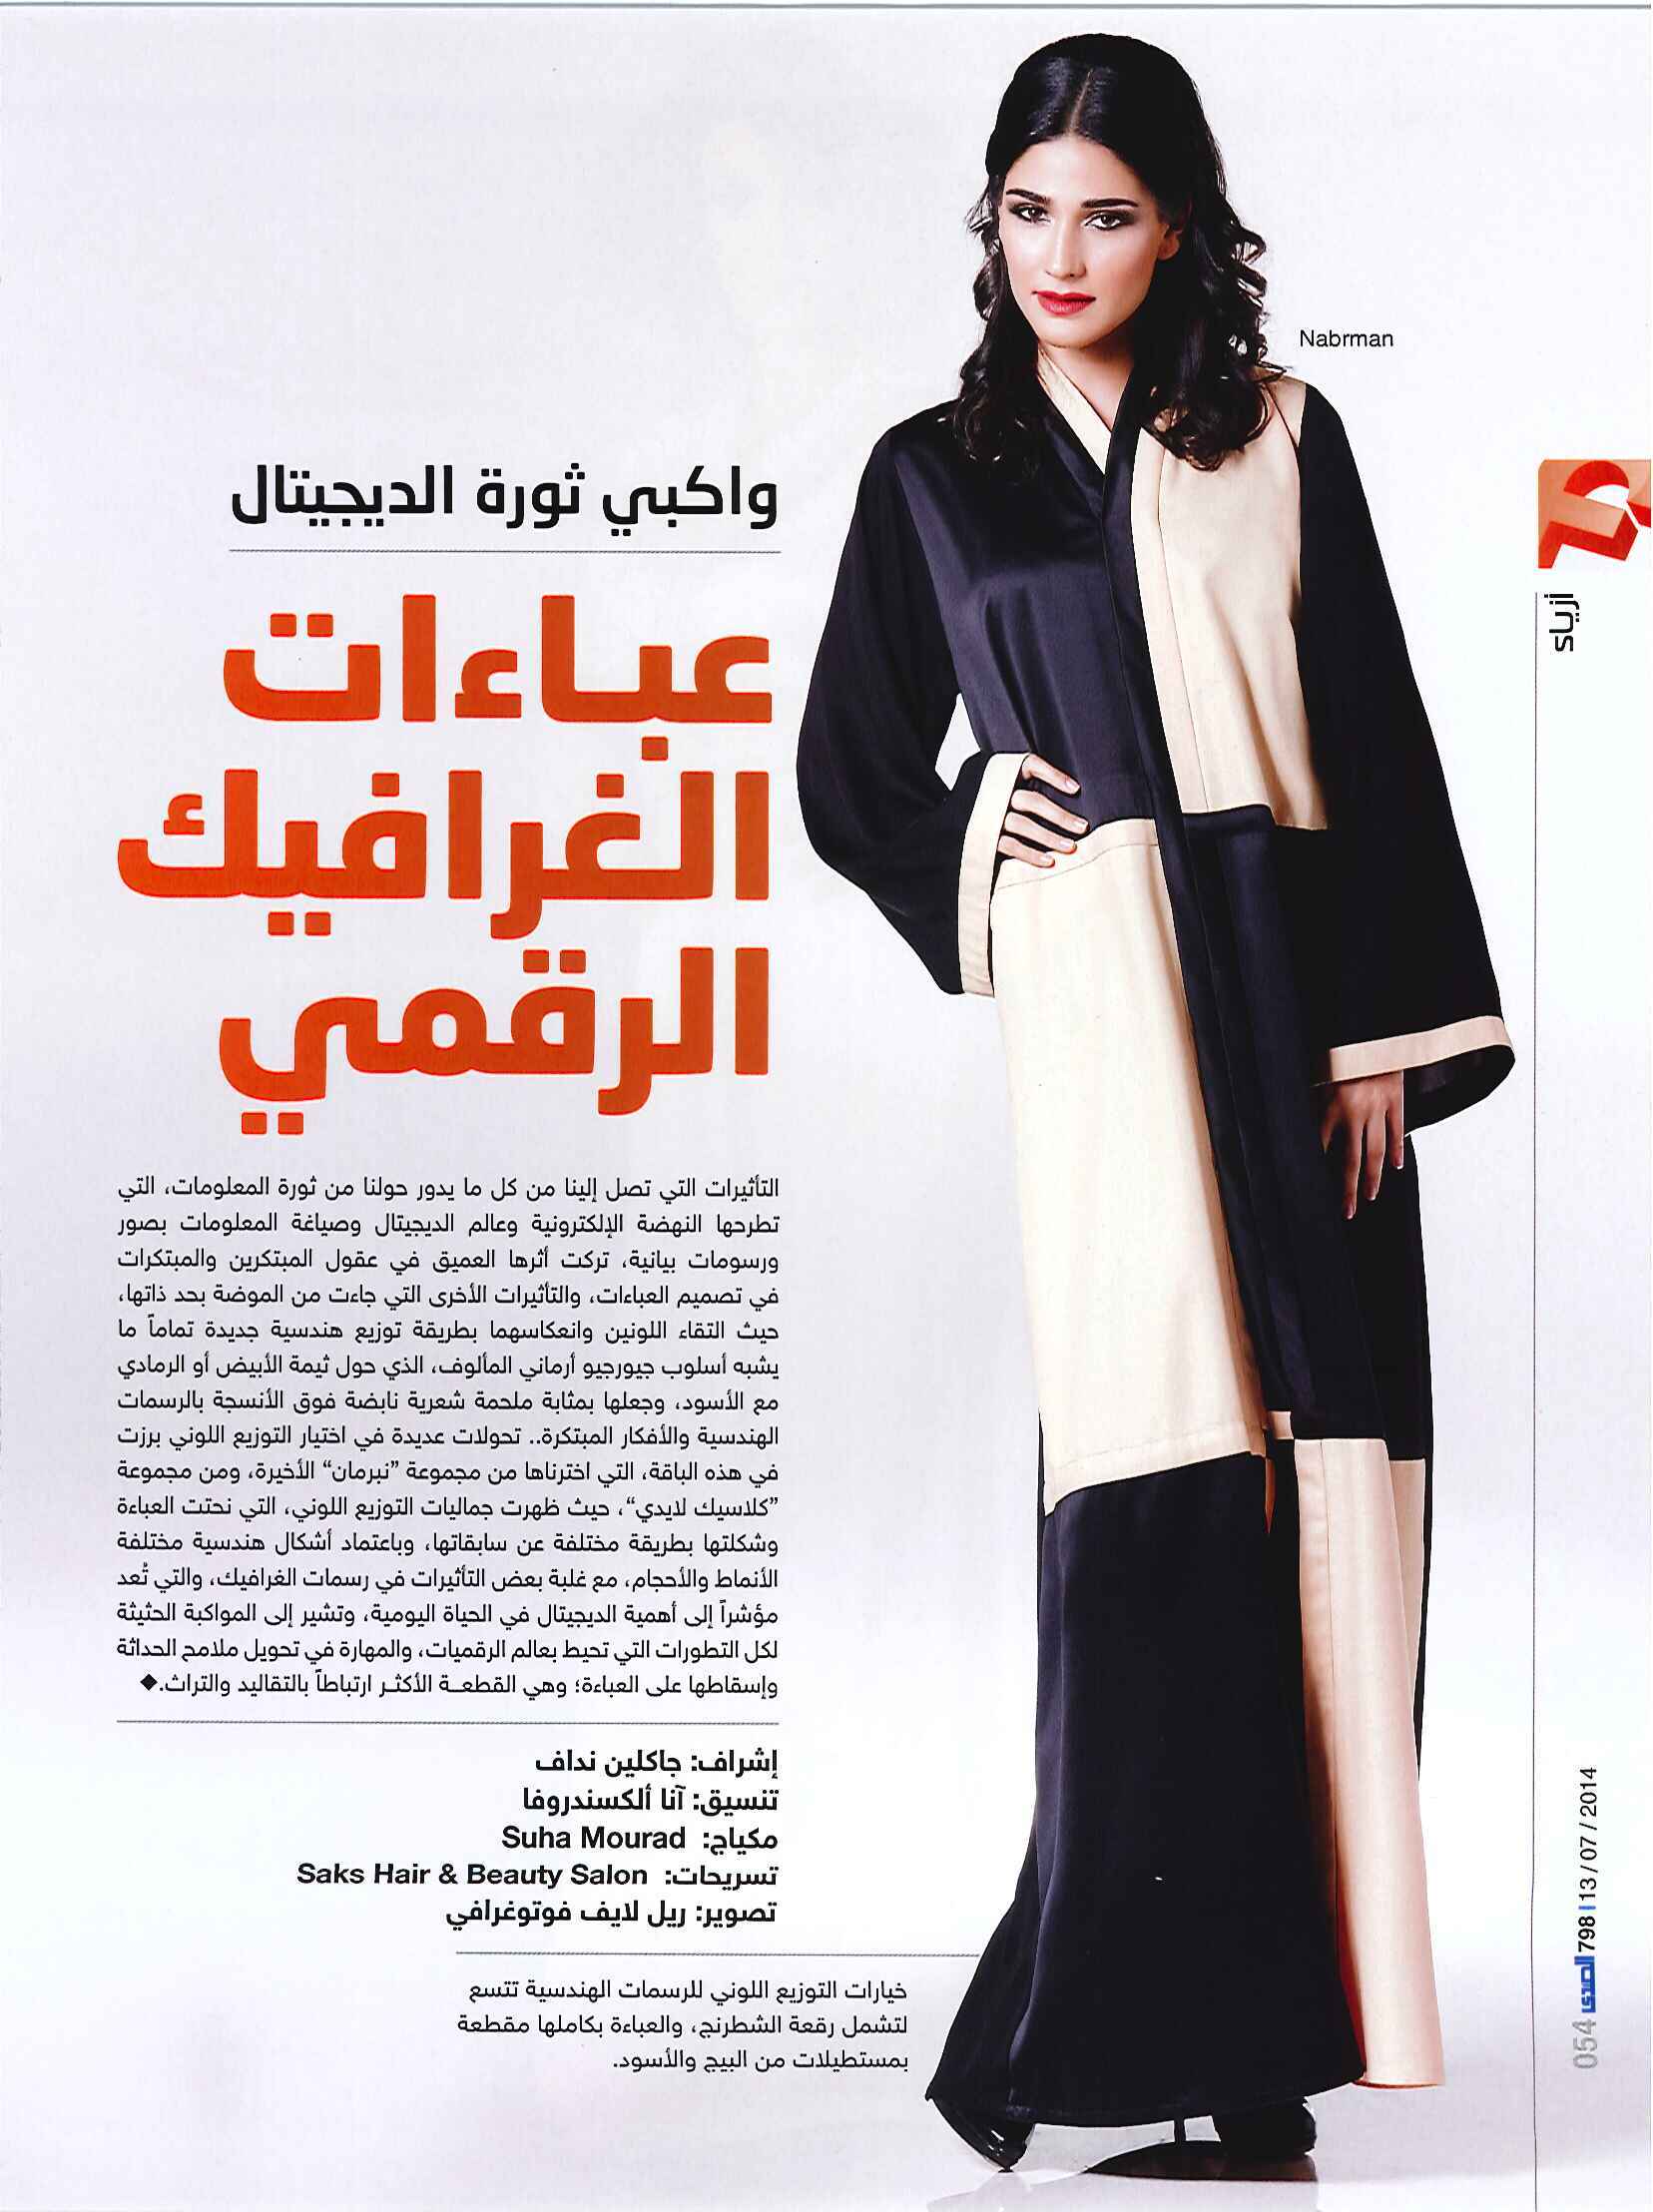 FLC Models & Talents - Catalogue Shoots - Al Sada - Veronica